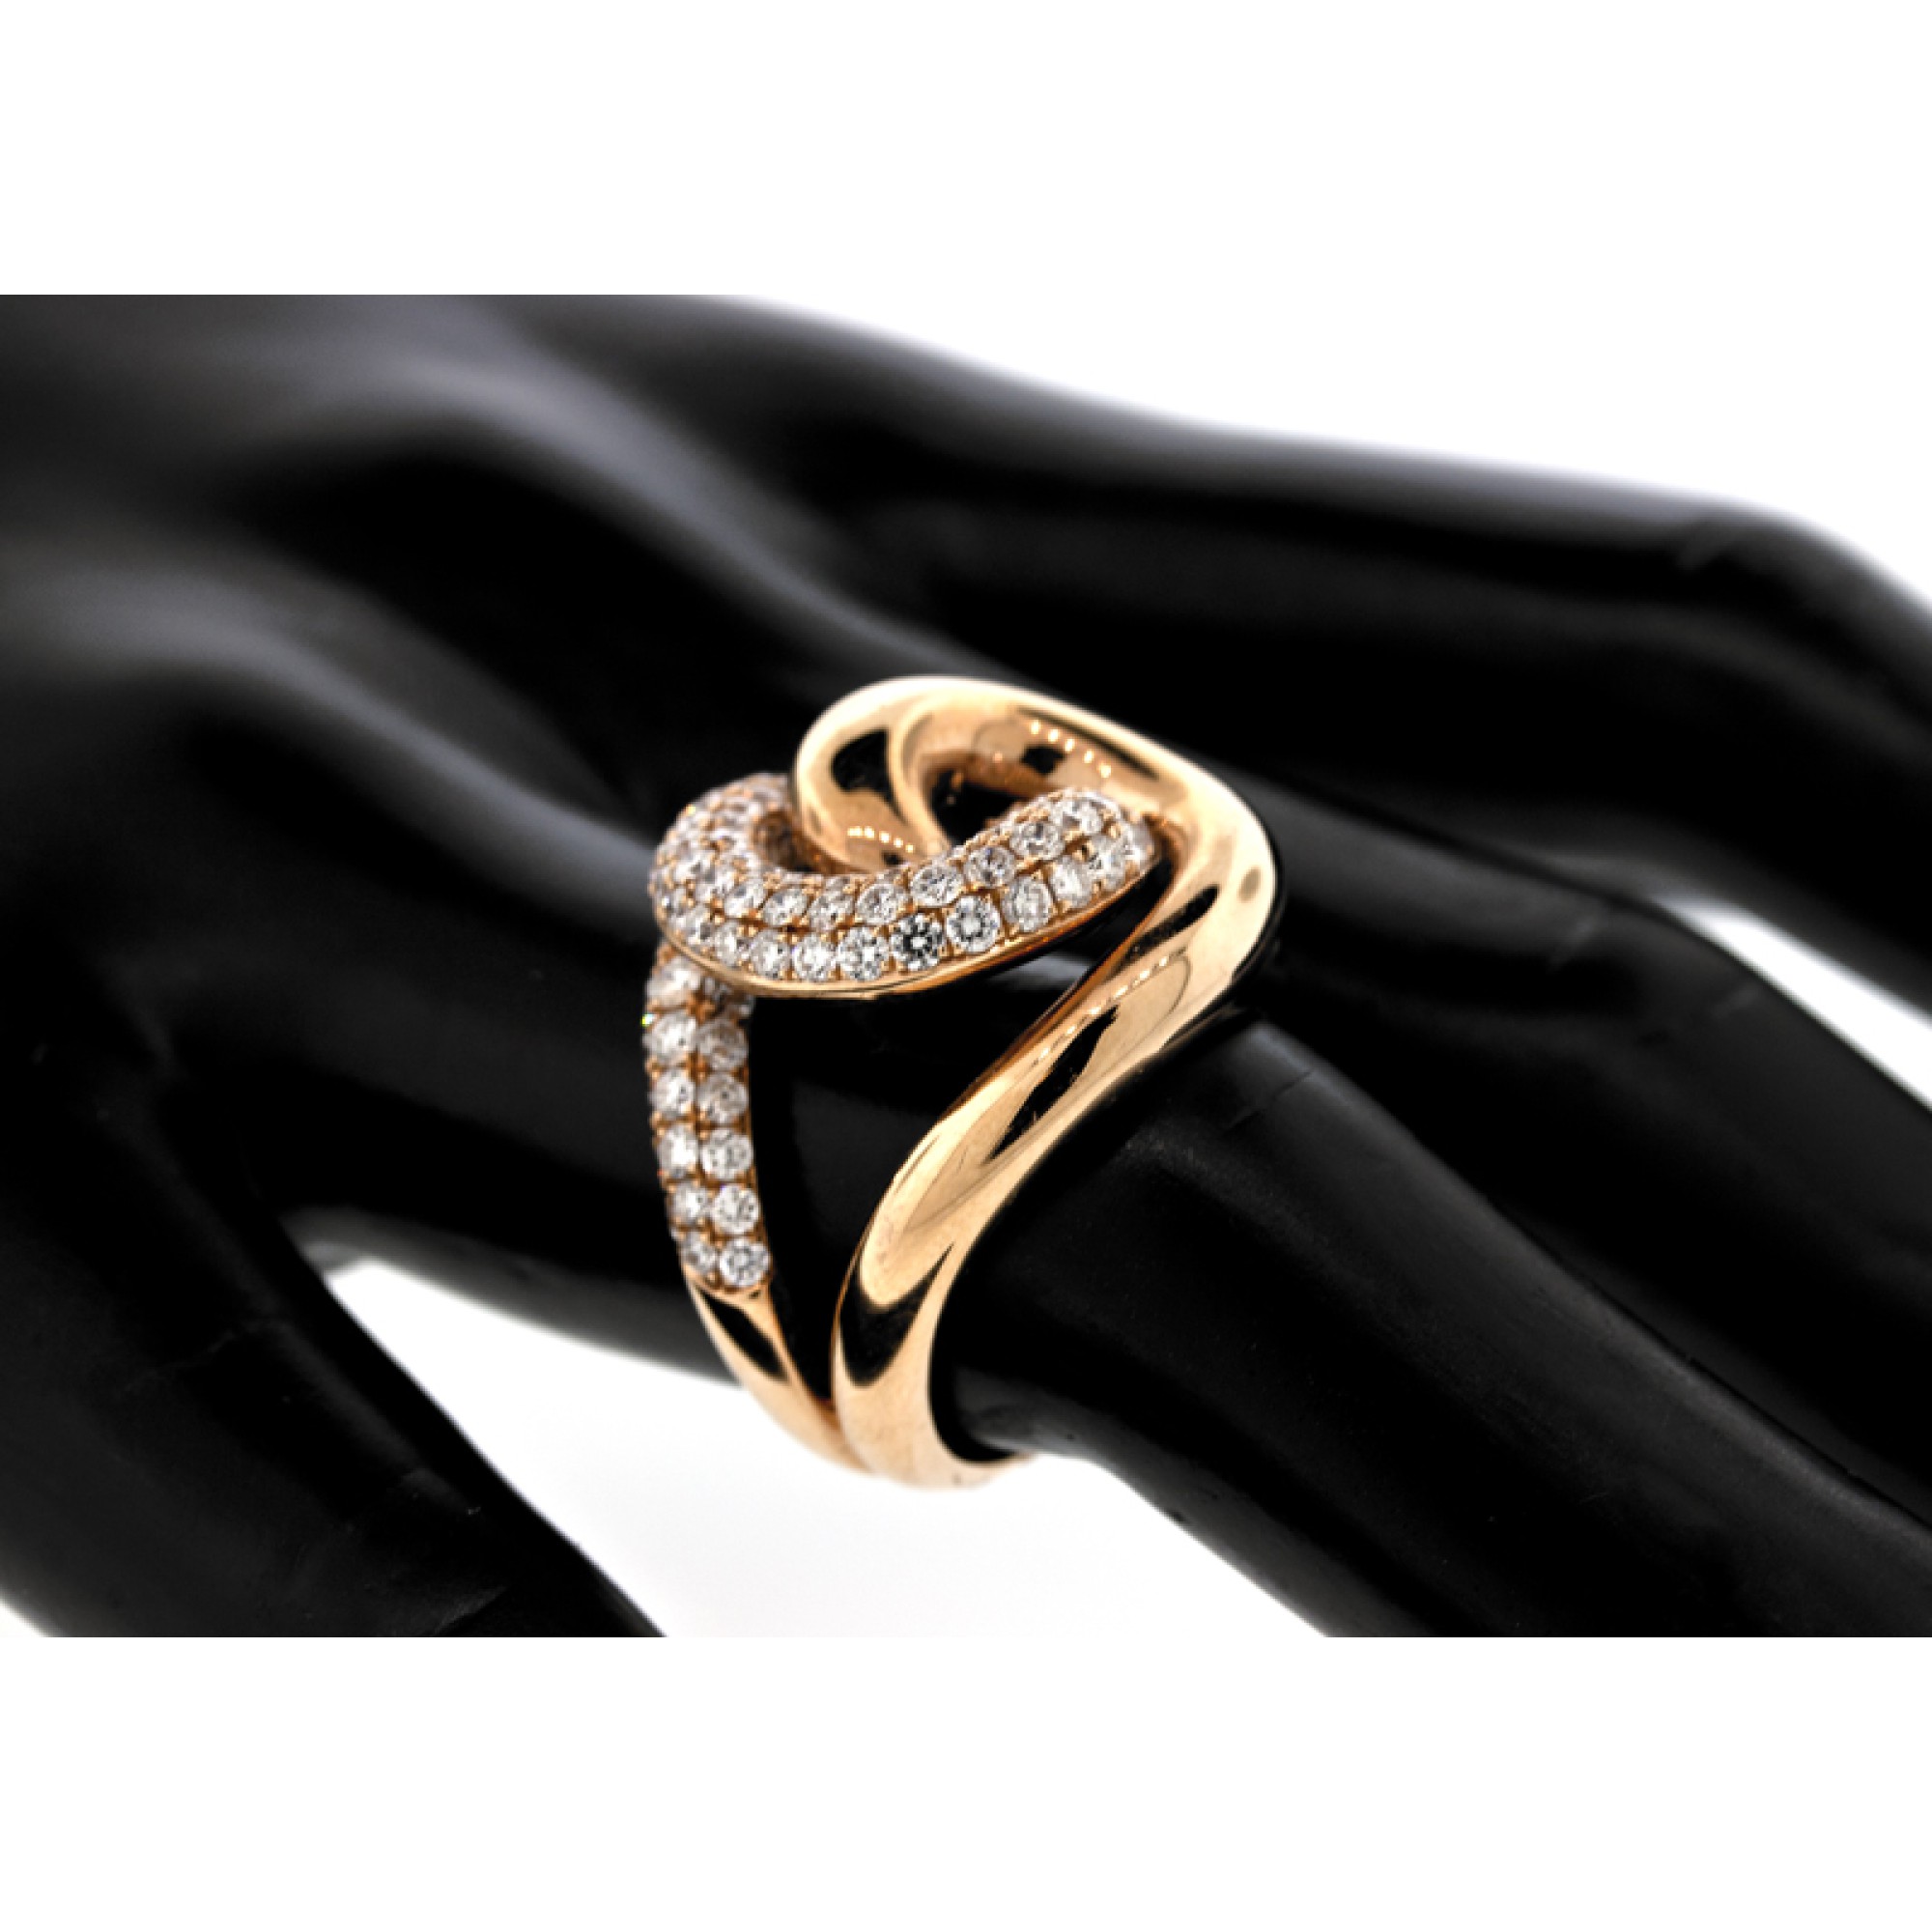 18K Rose & White Gold Polish Diamond Ring For Women - 235-DR1133 in 2.150  Grams